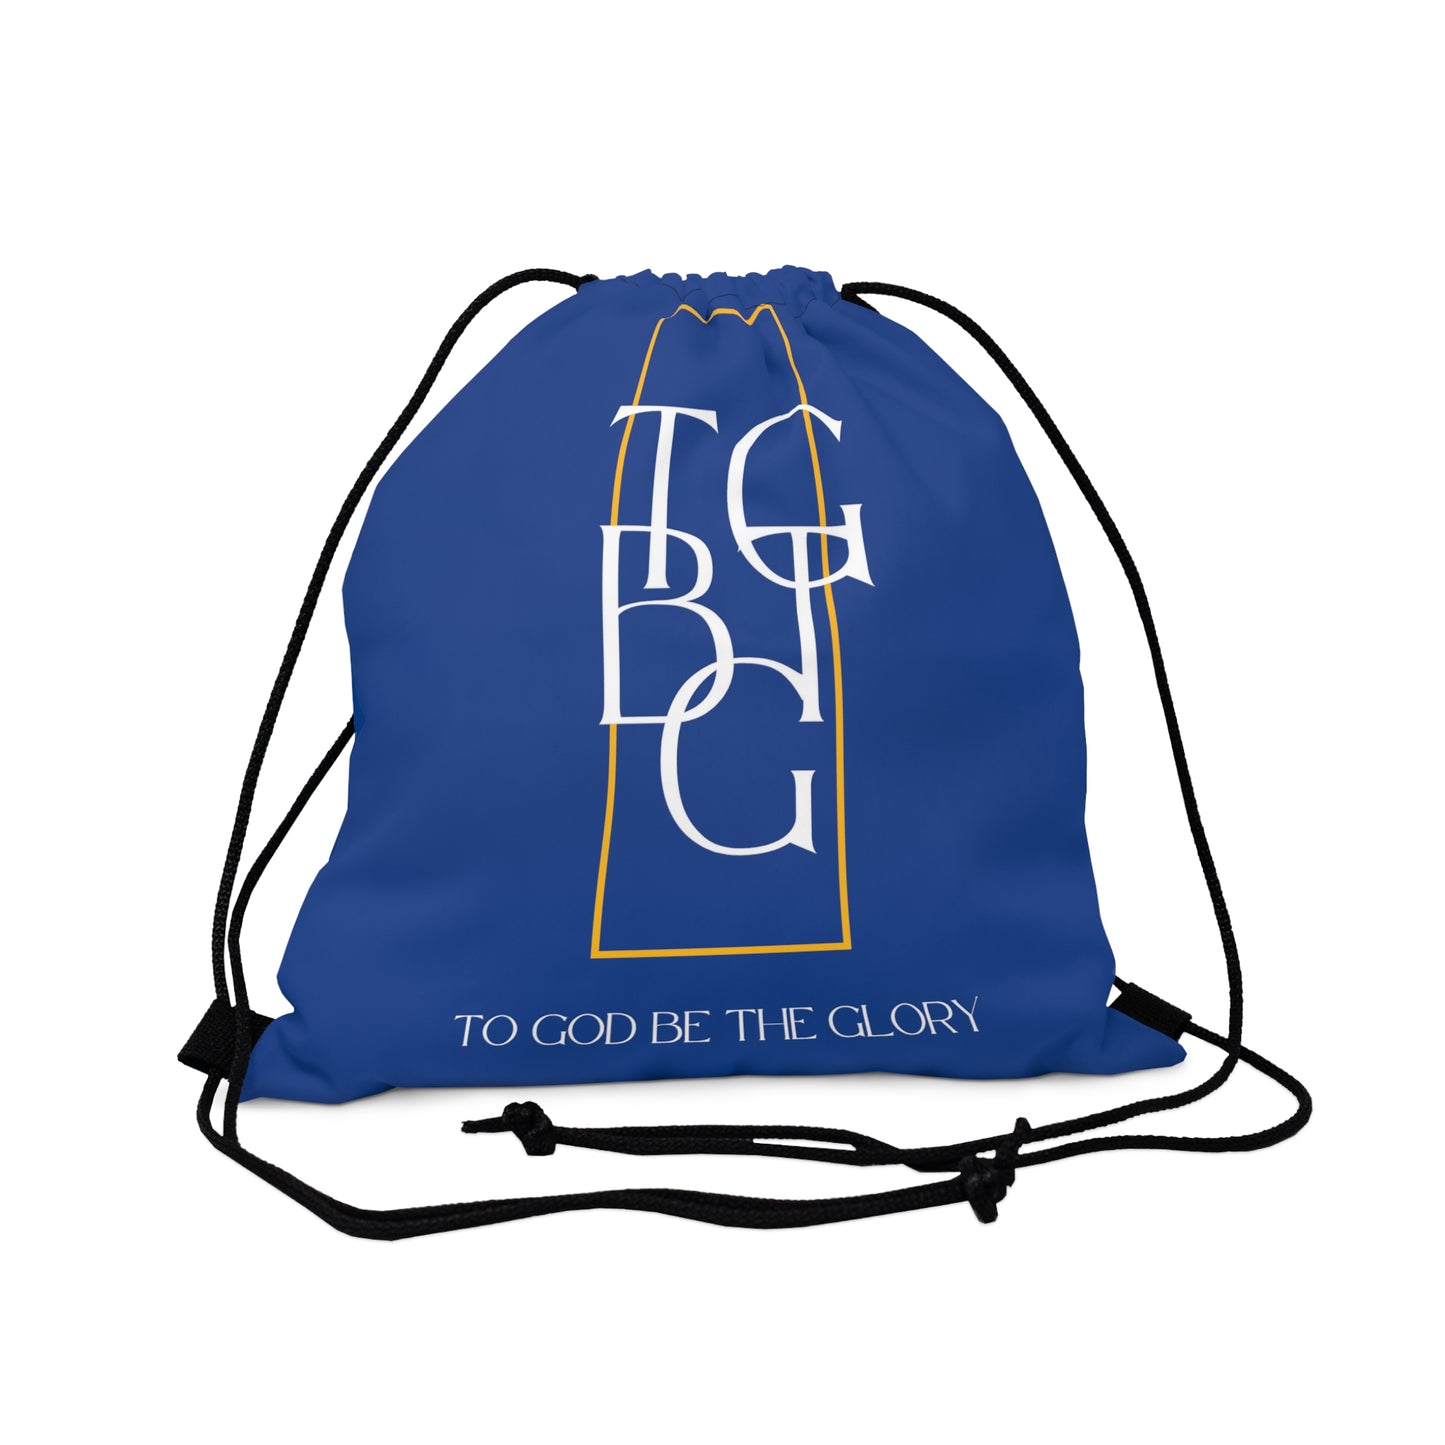 TGBTG Outdoor Drawstring Bag Blue